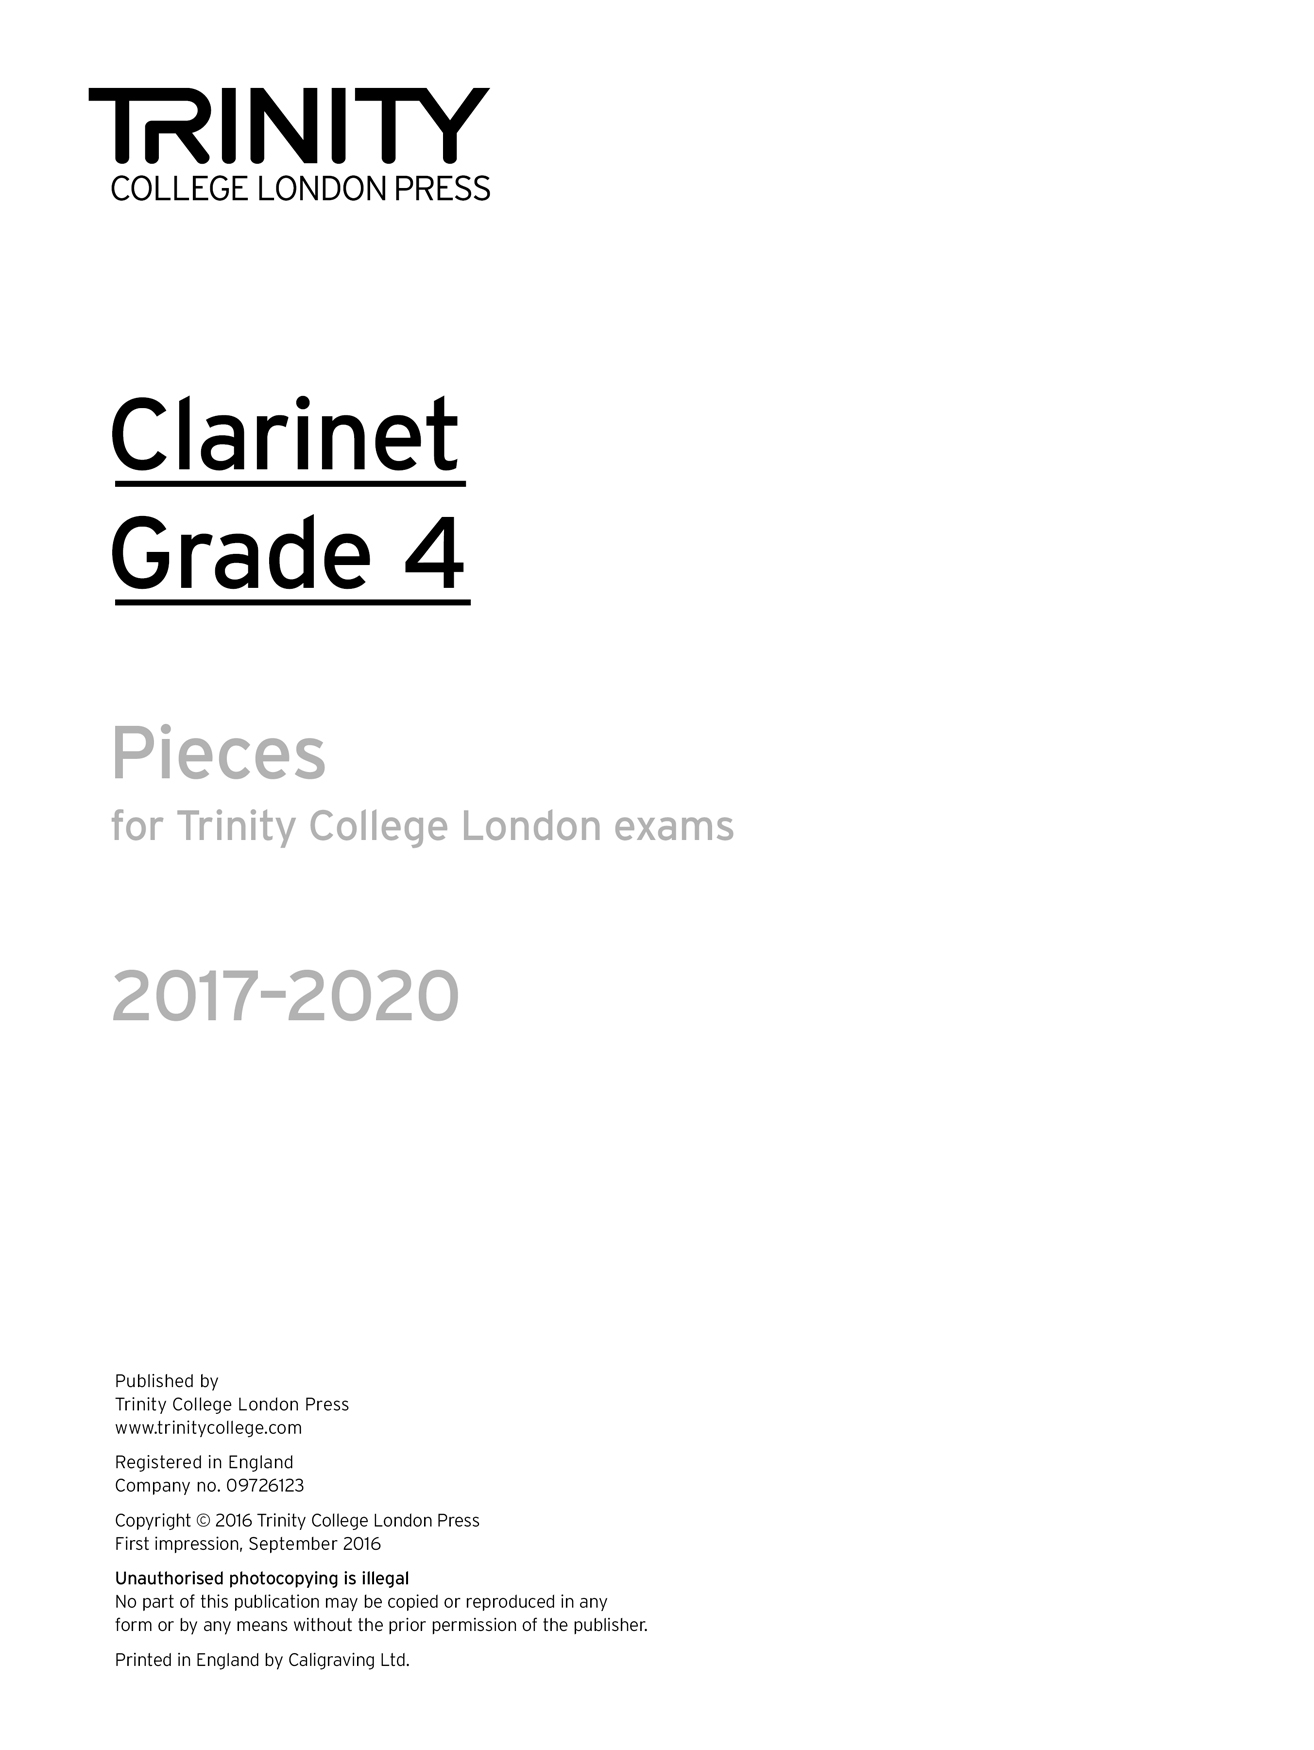 Clarinet Exam Pieces Grade 4 2017-2020: Clarinet: Instrumental Album